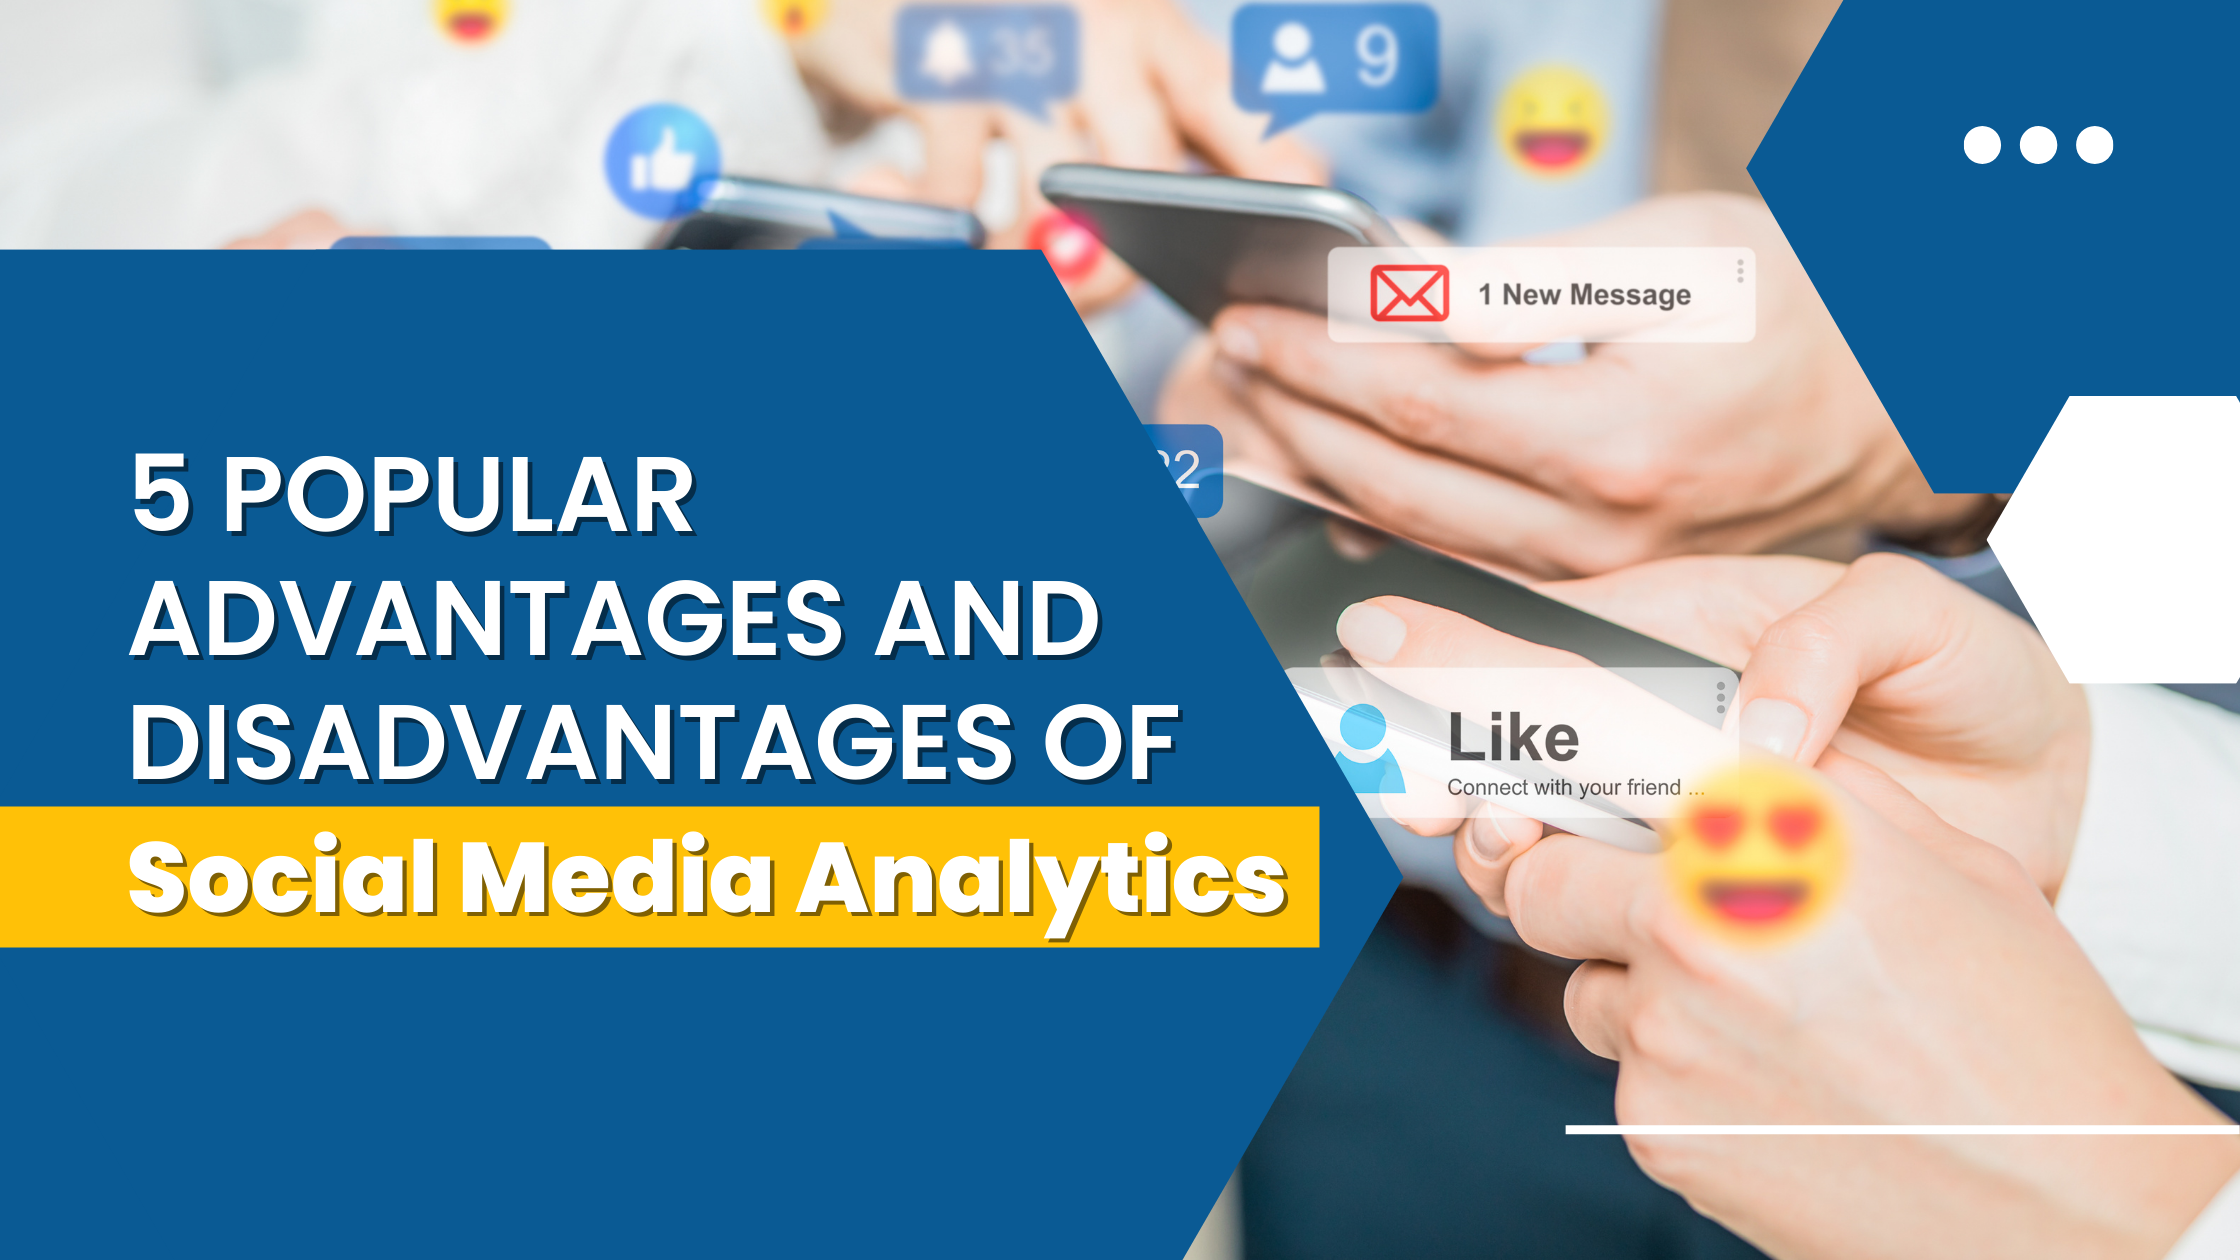 Social Media: Advantages and Disadvantages